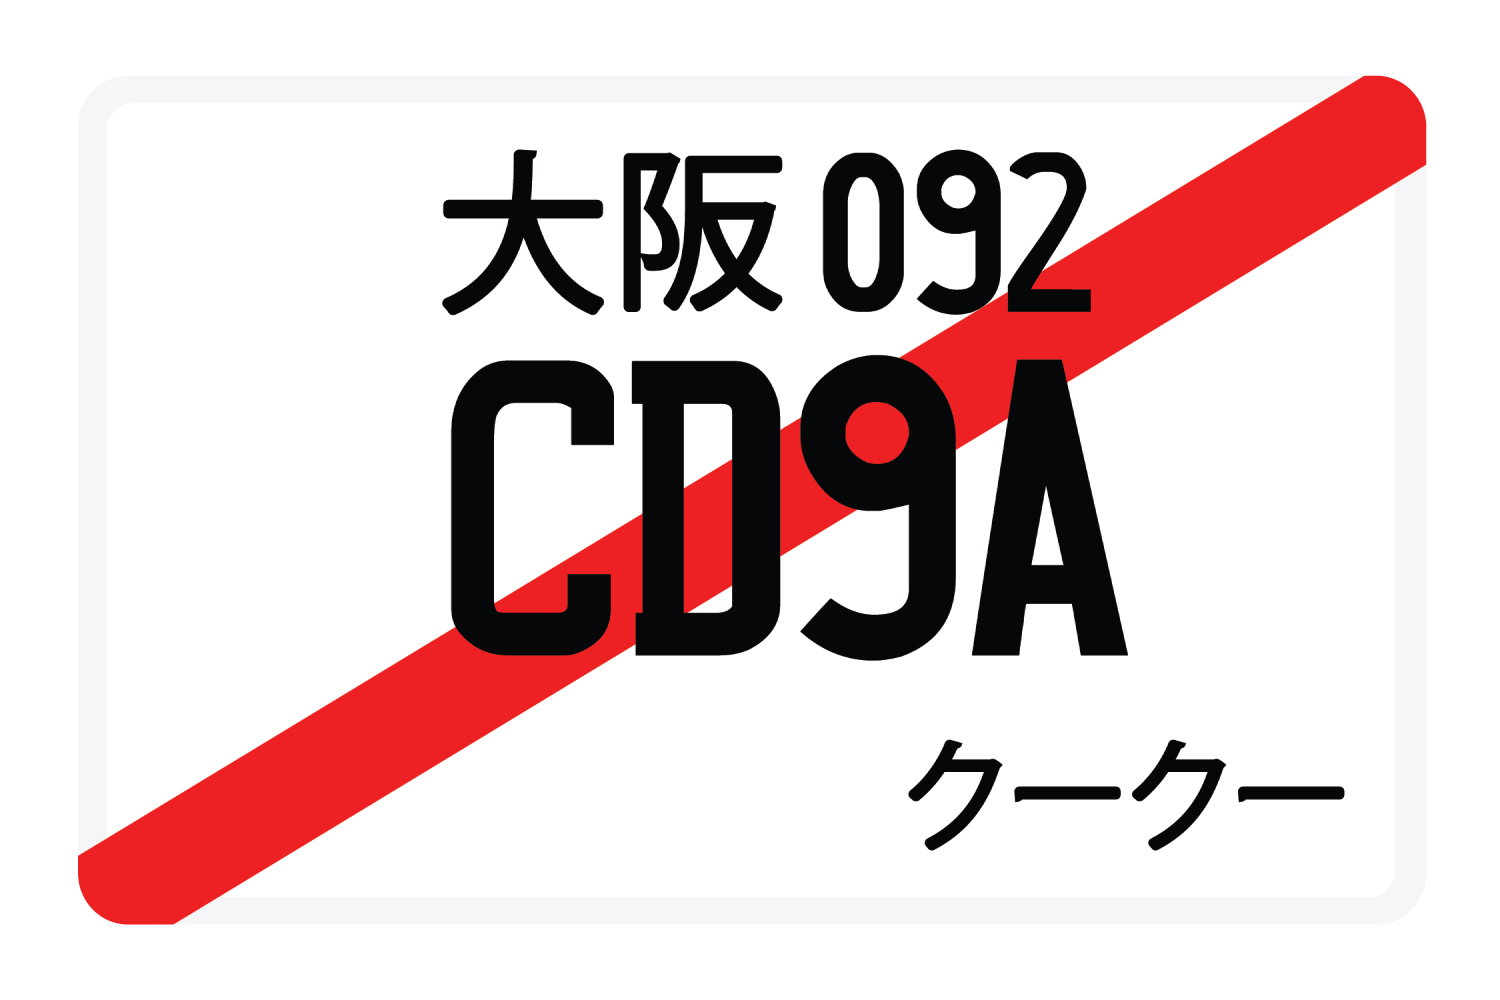 CD9A092